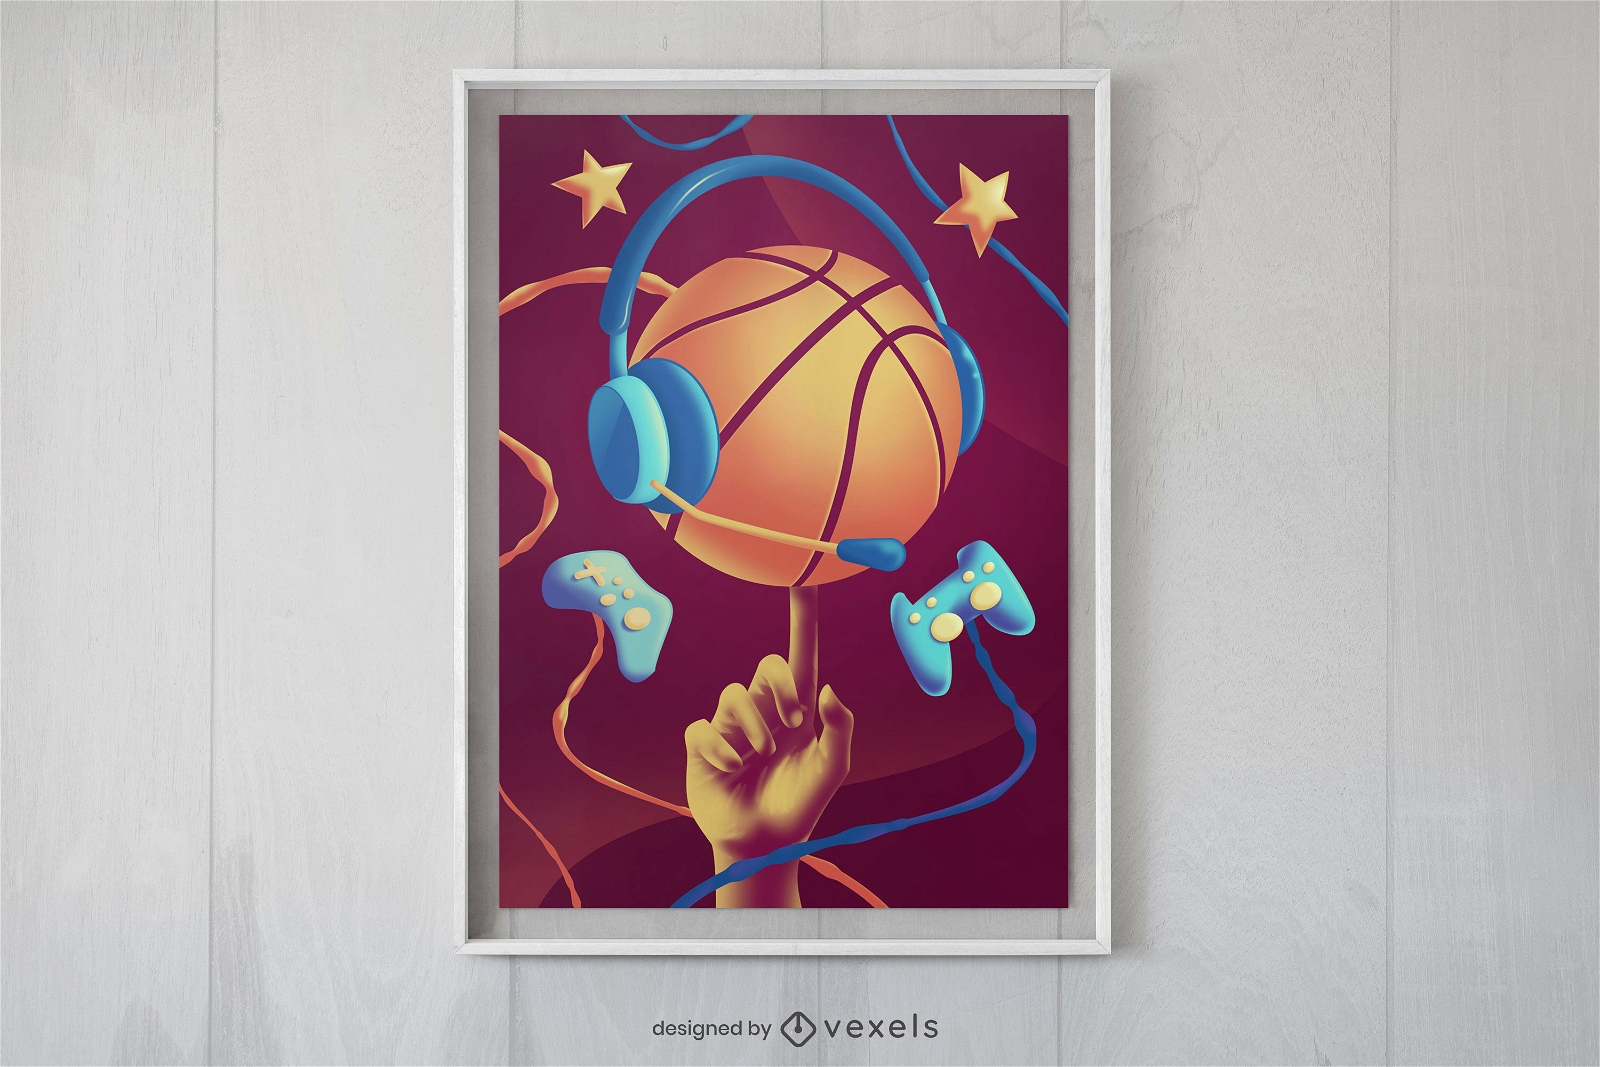 Diseño de carteles de baloncesto y joysticks.